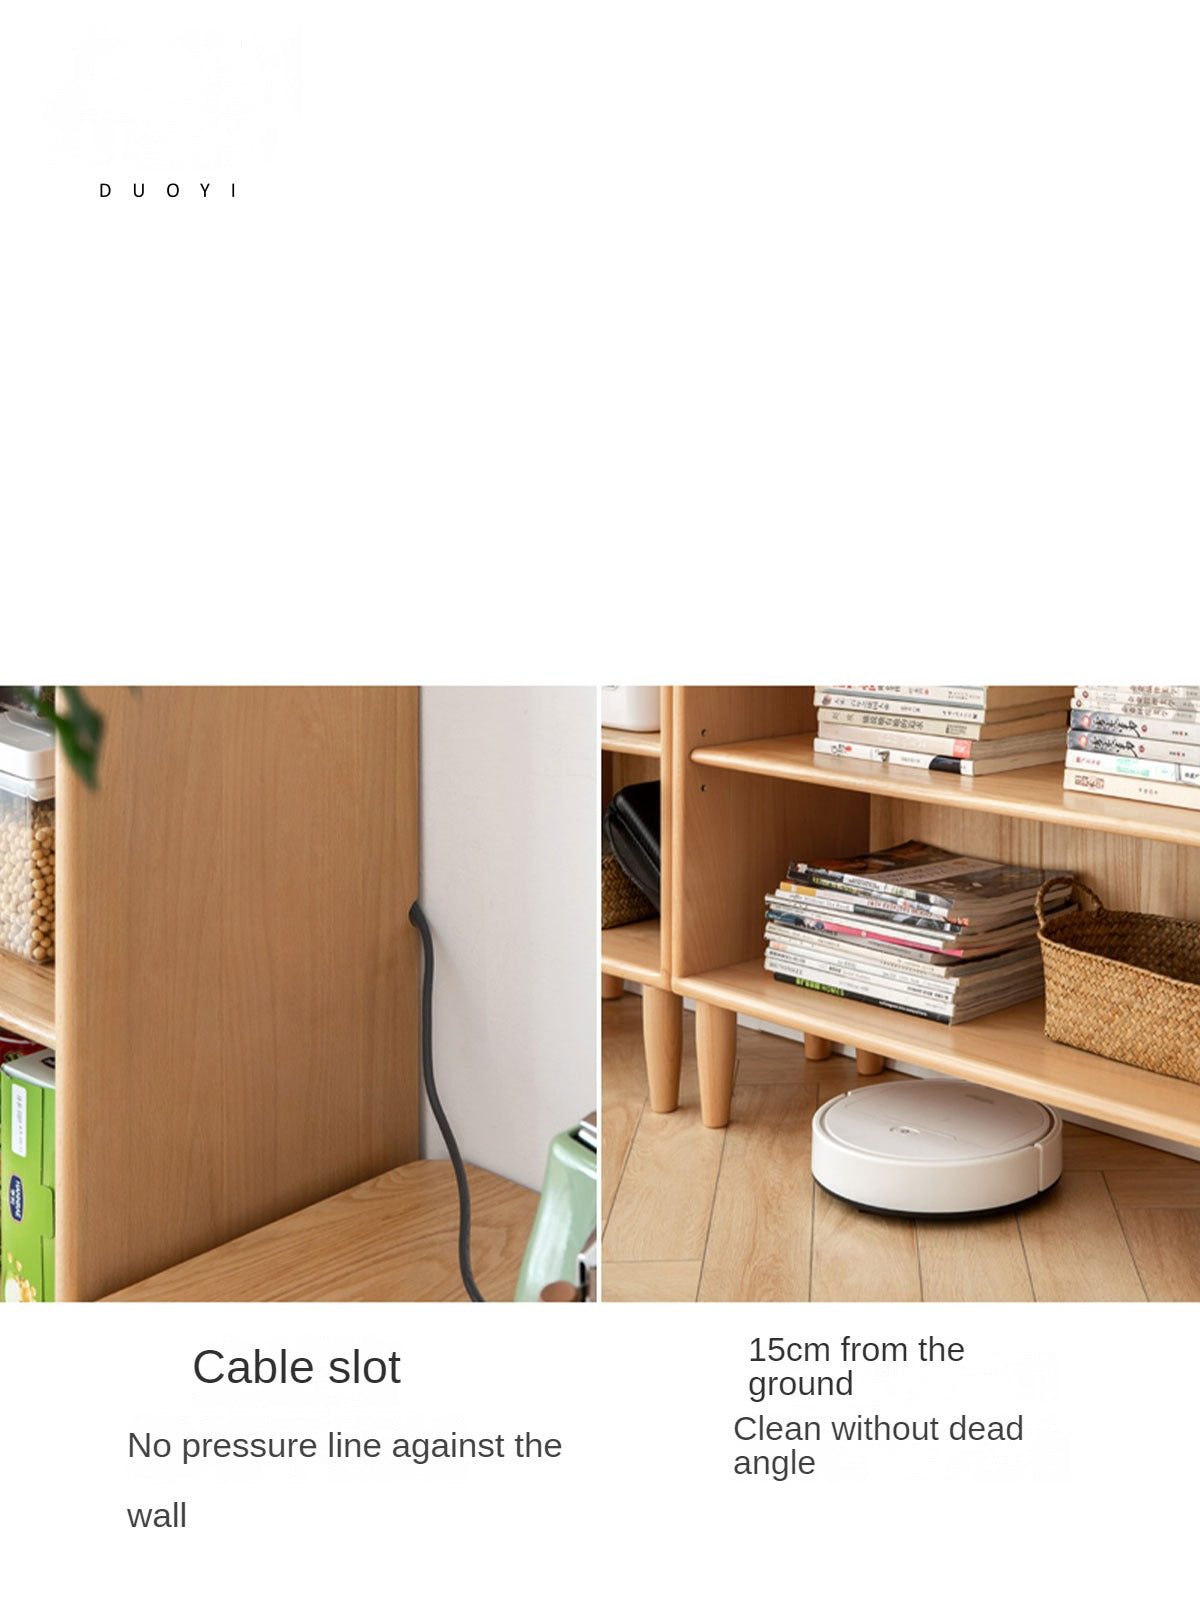 Beech solid wood bookshelf combination ,open storage cabinet"-